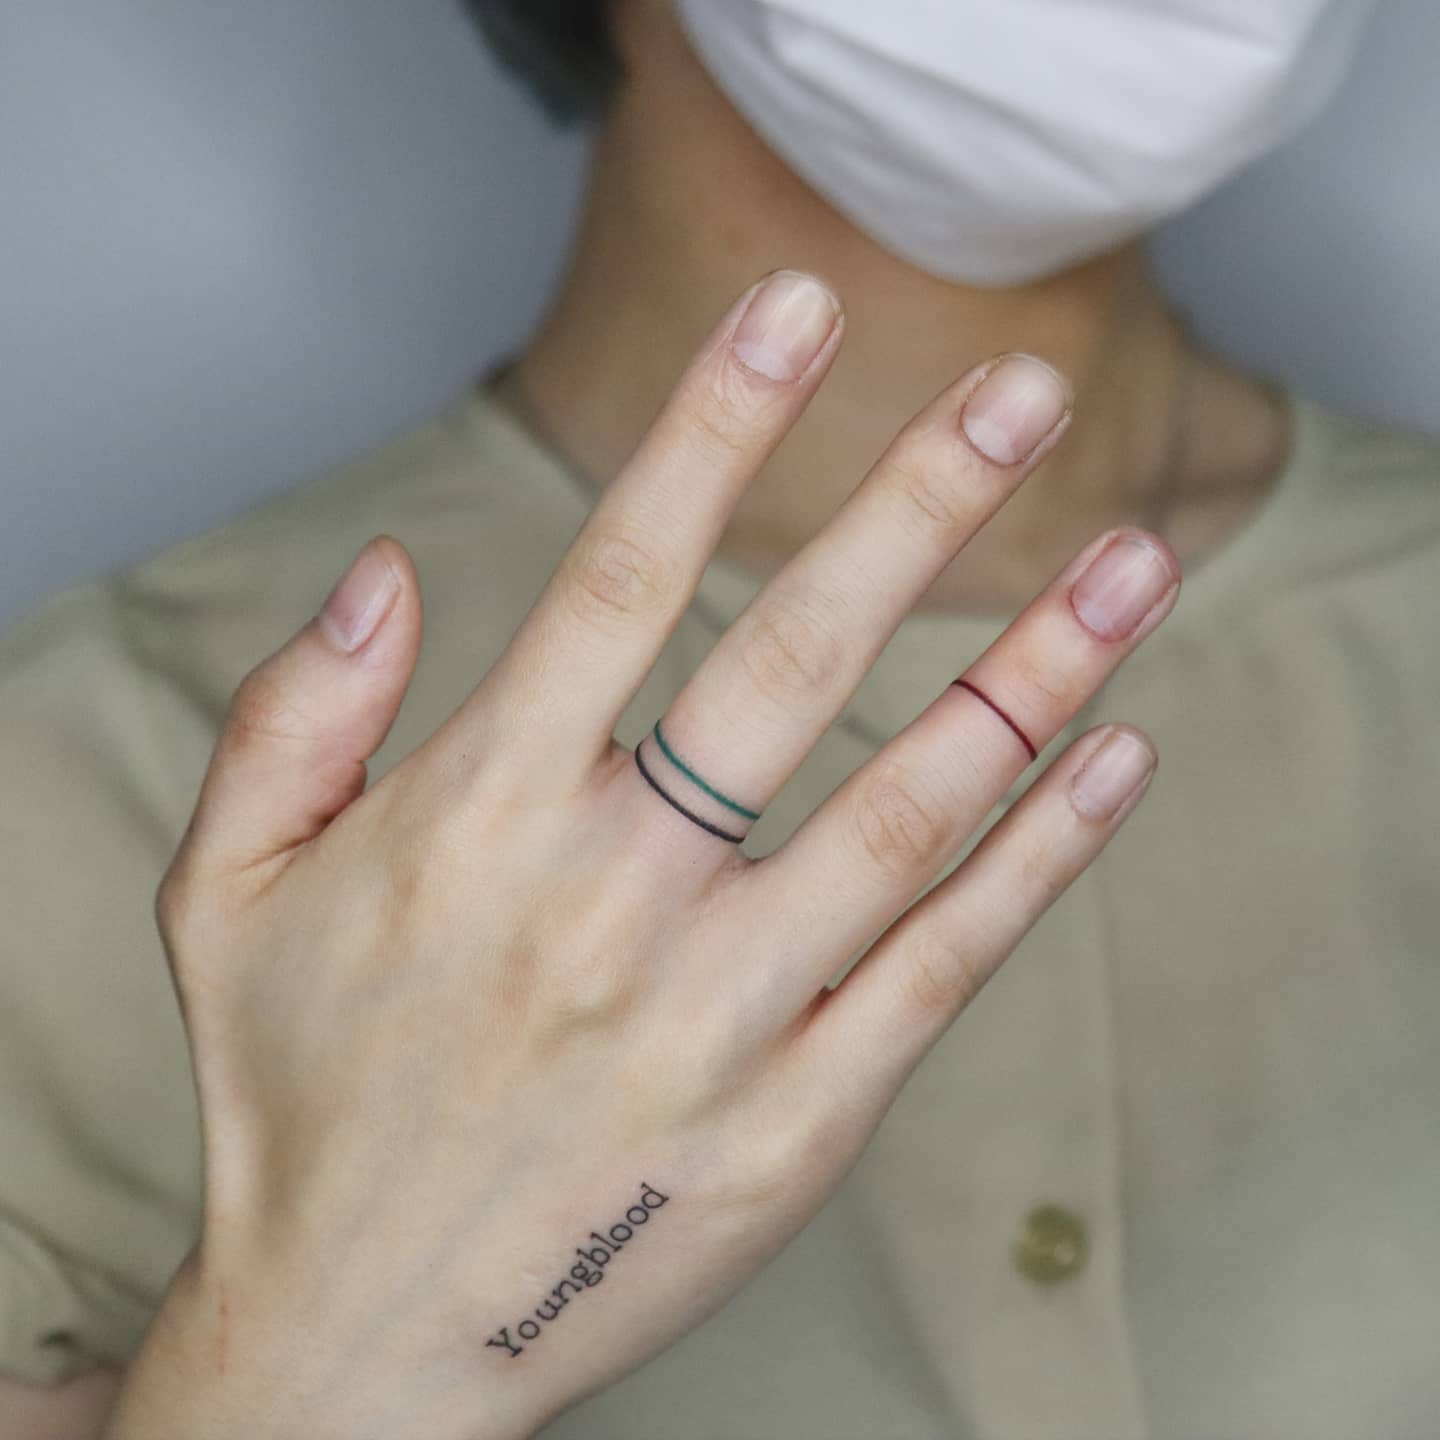 Ring tattoo by yujin tattoo